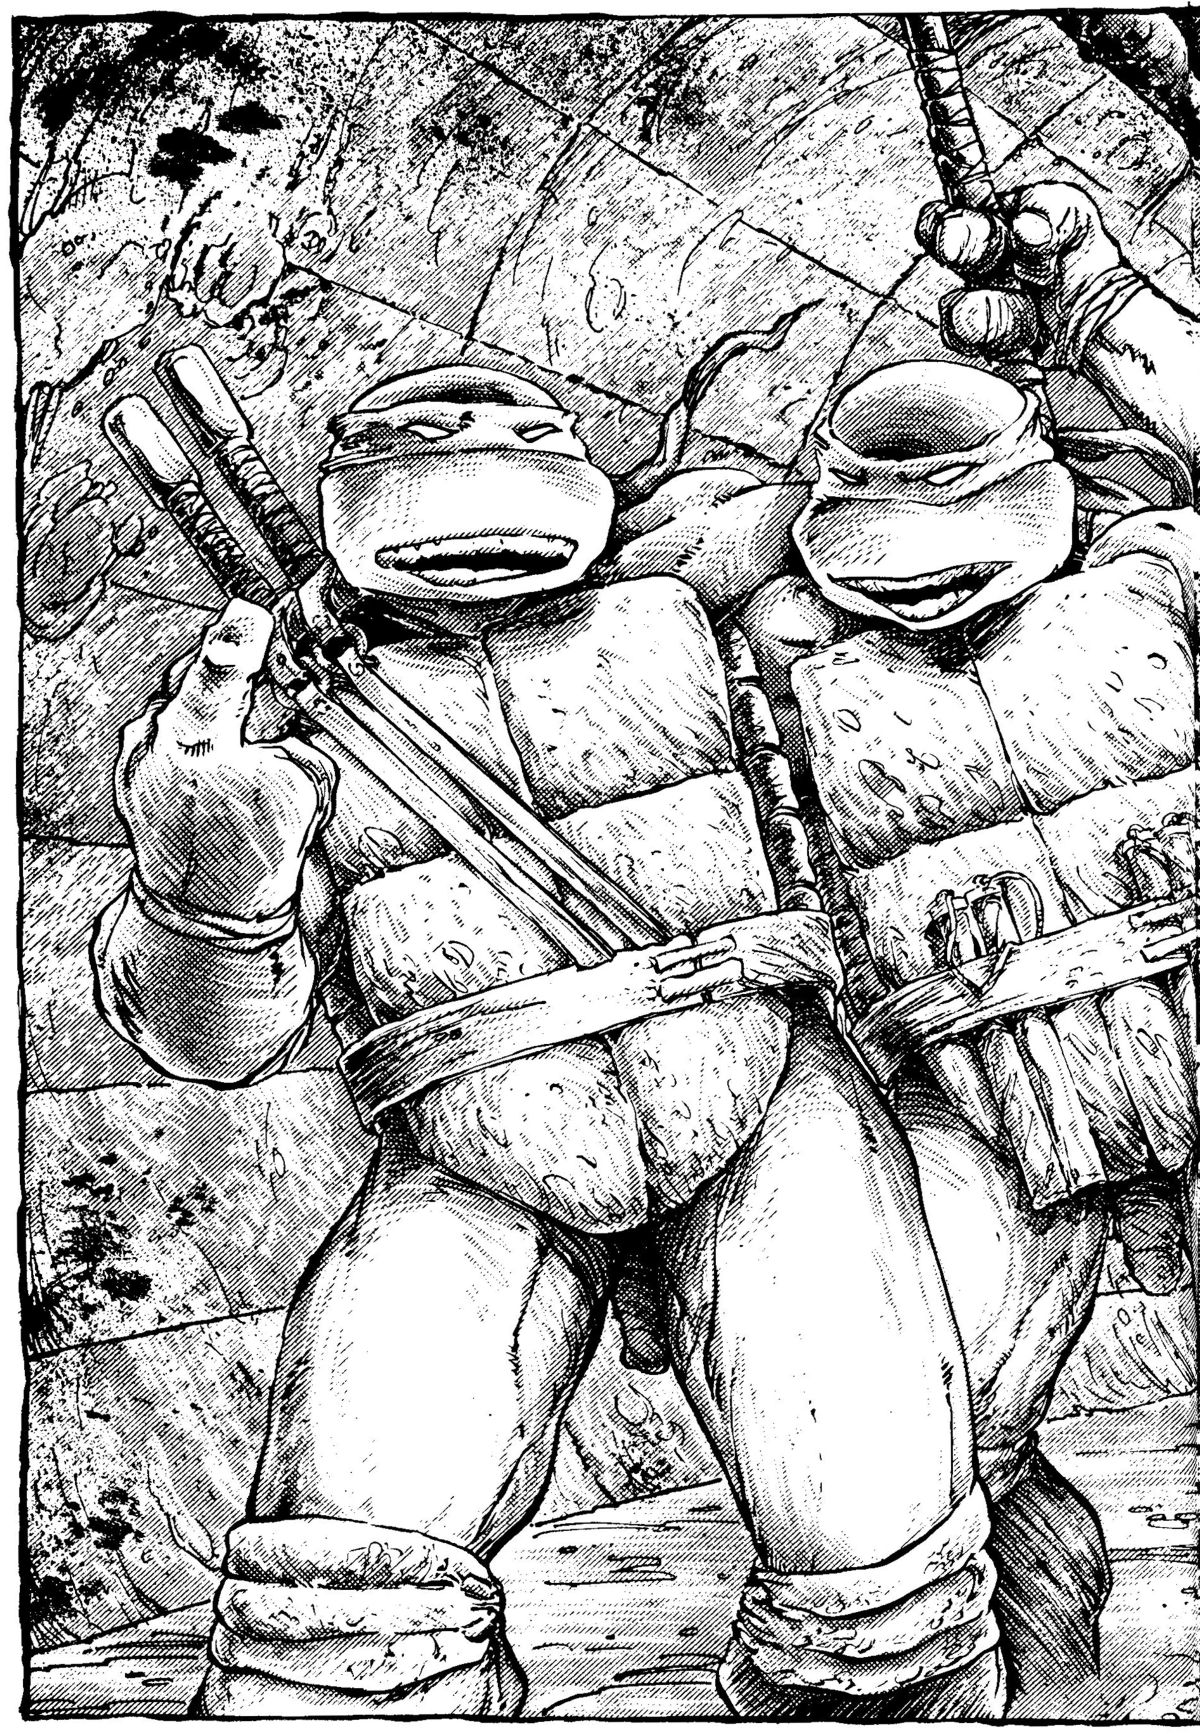 Read online Teenage Mutant Ninja Turtles: The Movie comic -  Issue # Full - 11